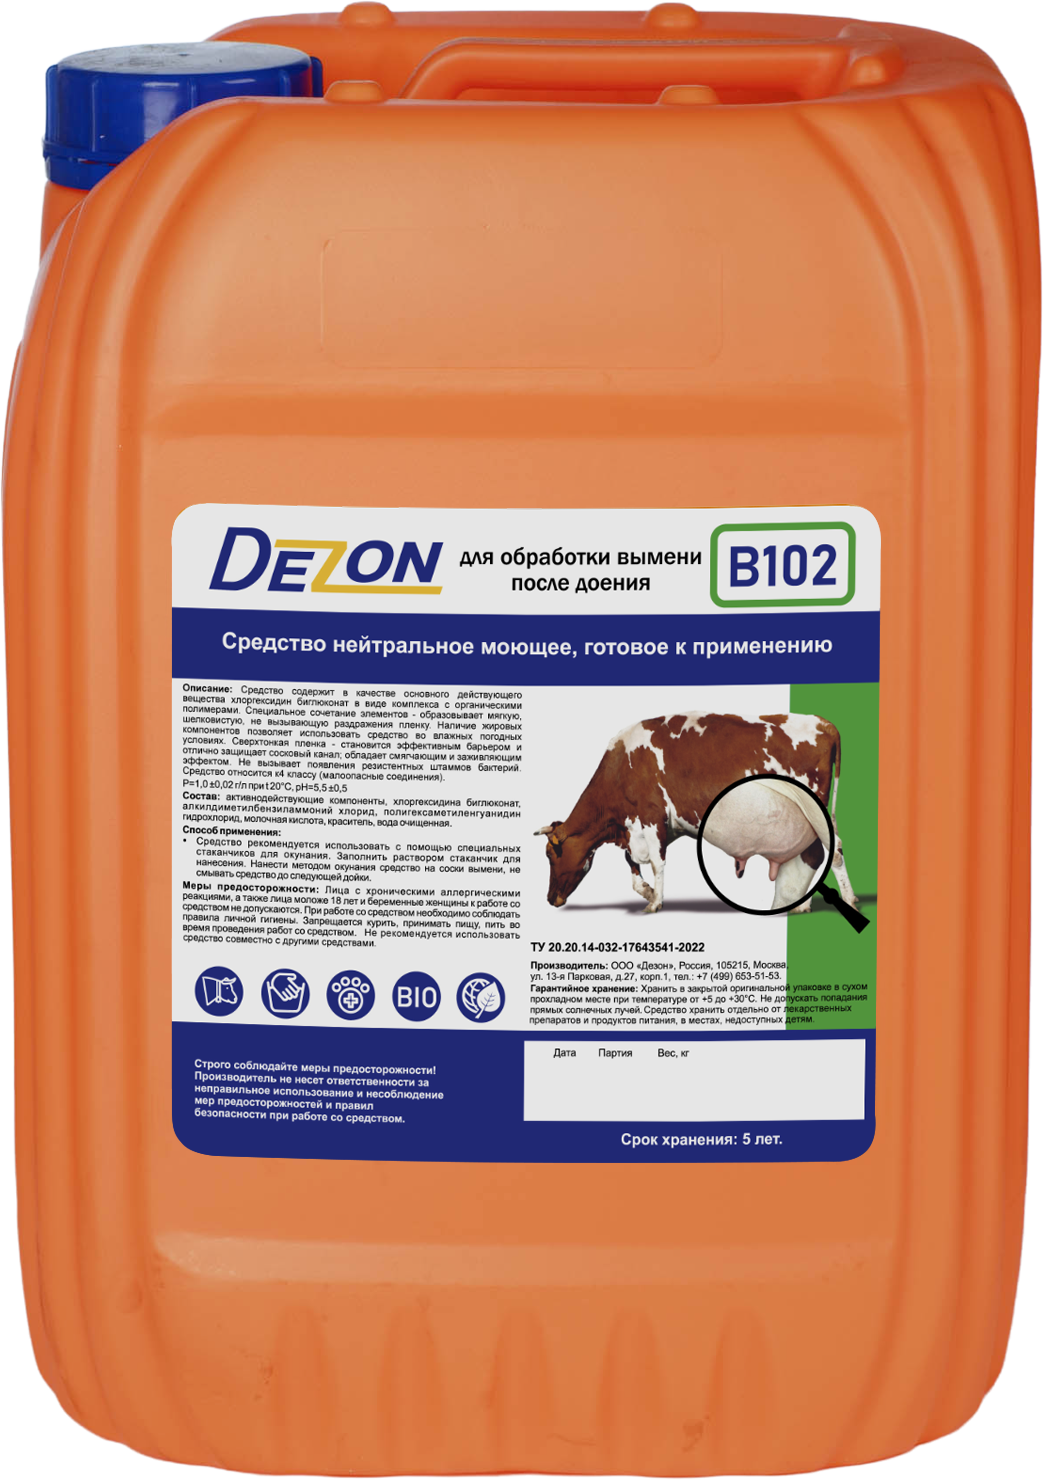 B102 (готовое нейтрально моющее средство для обработки сосков вымени у коров после доения.)